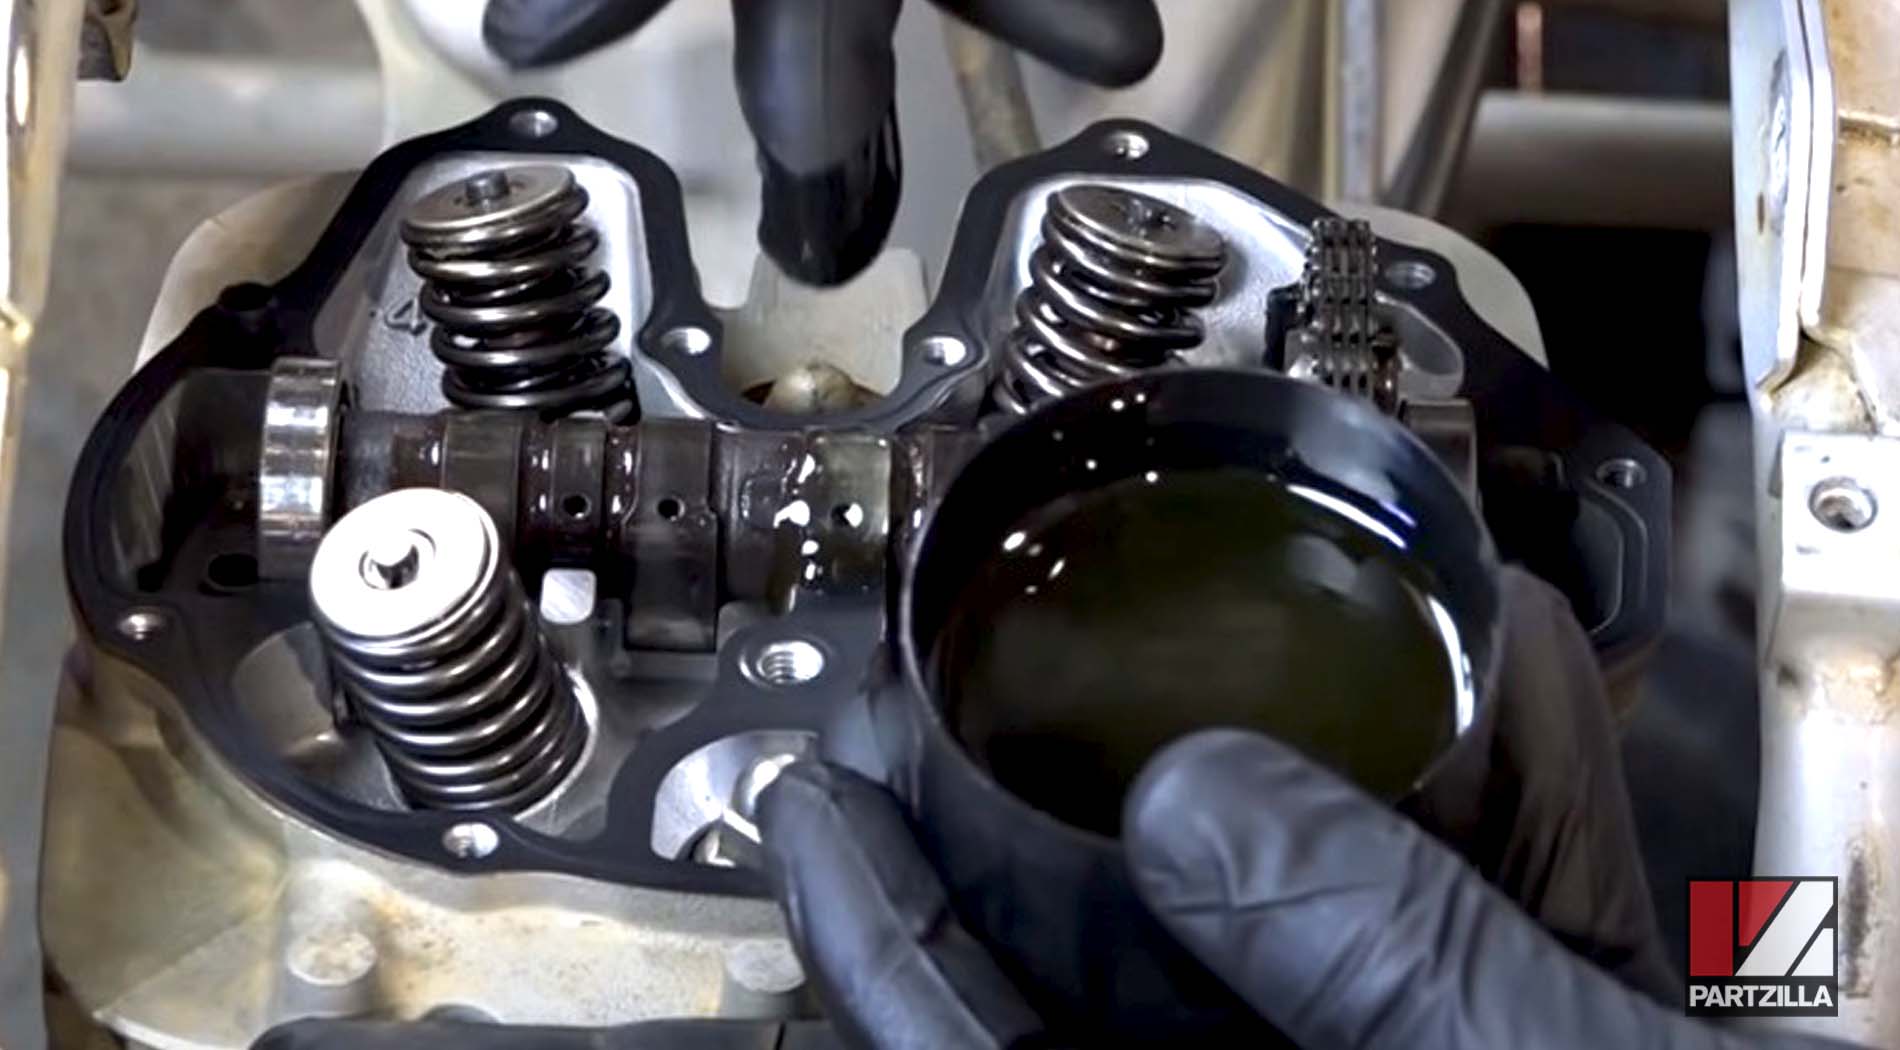 Honda TRX400 engine rebuild cam lobes